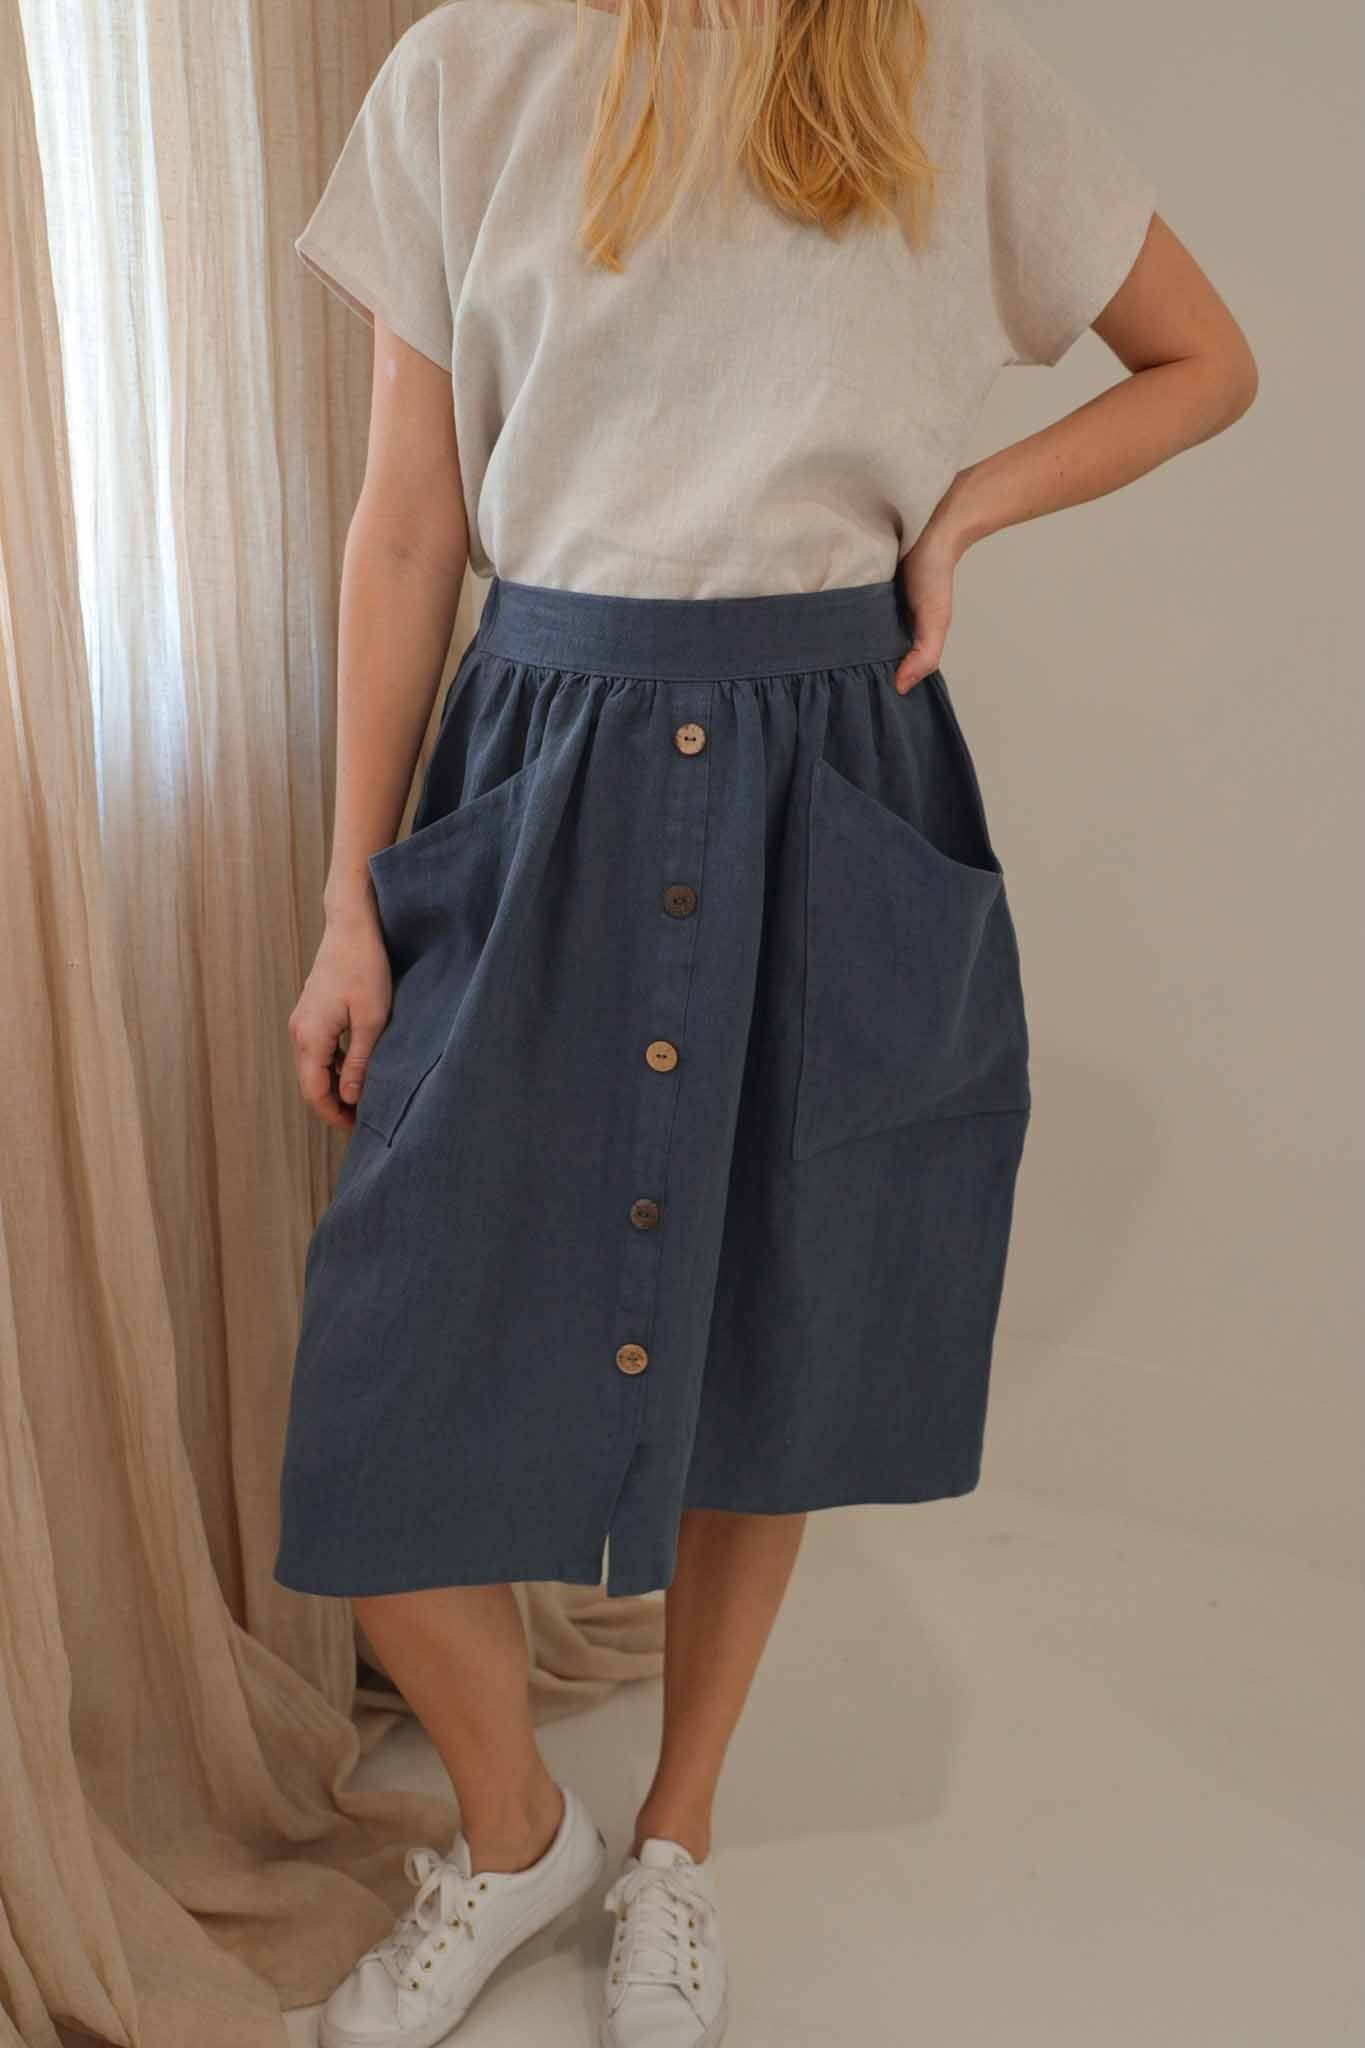 The Skirt - Antique Linen